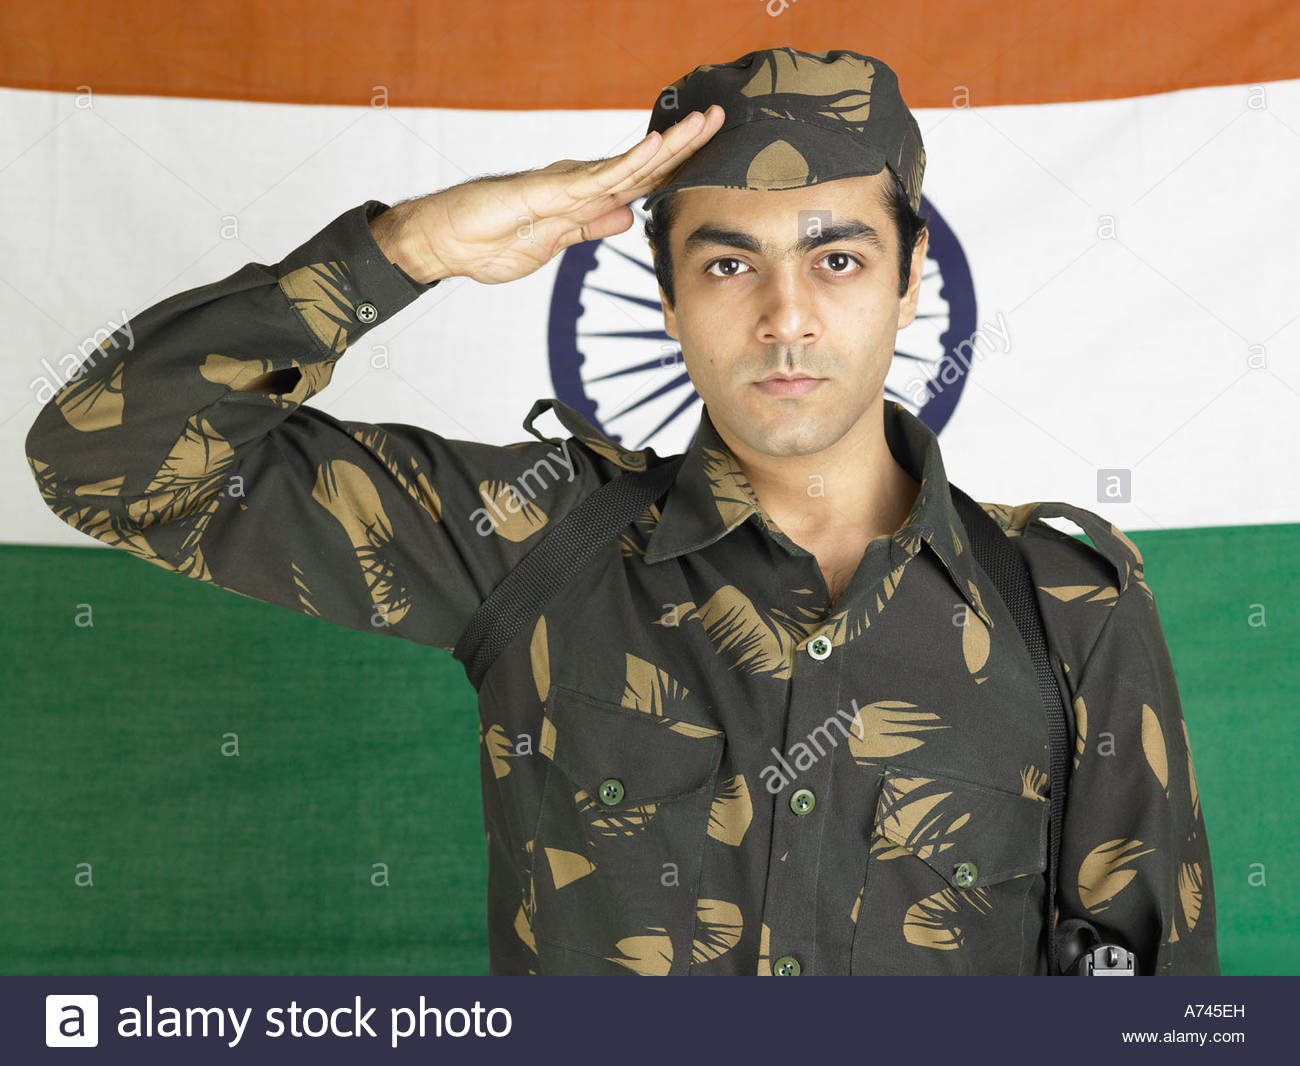 Army Man Salute Stock Photos Image